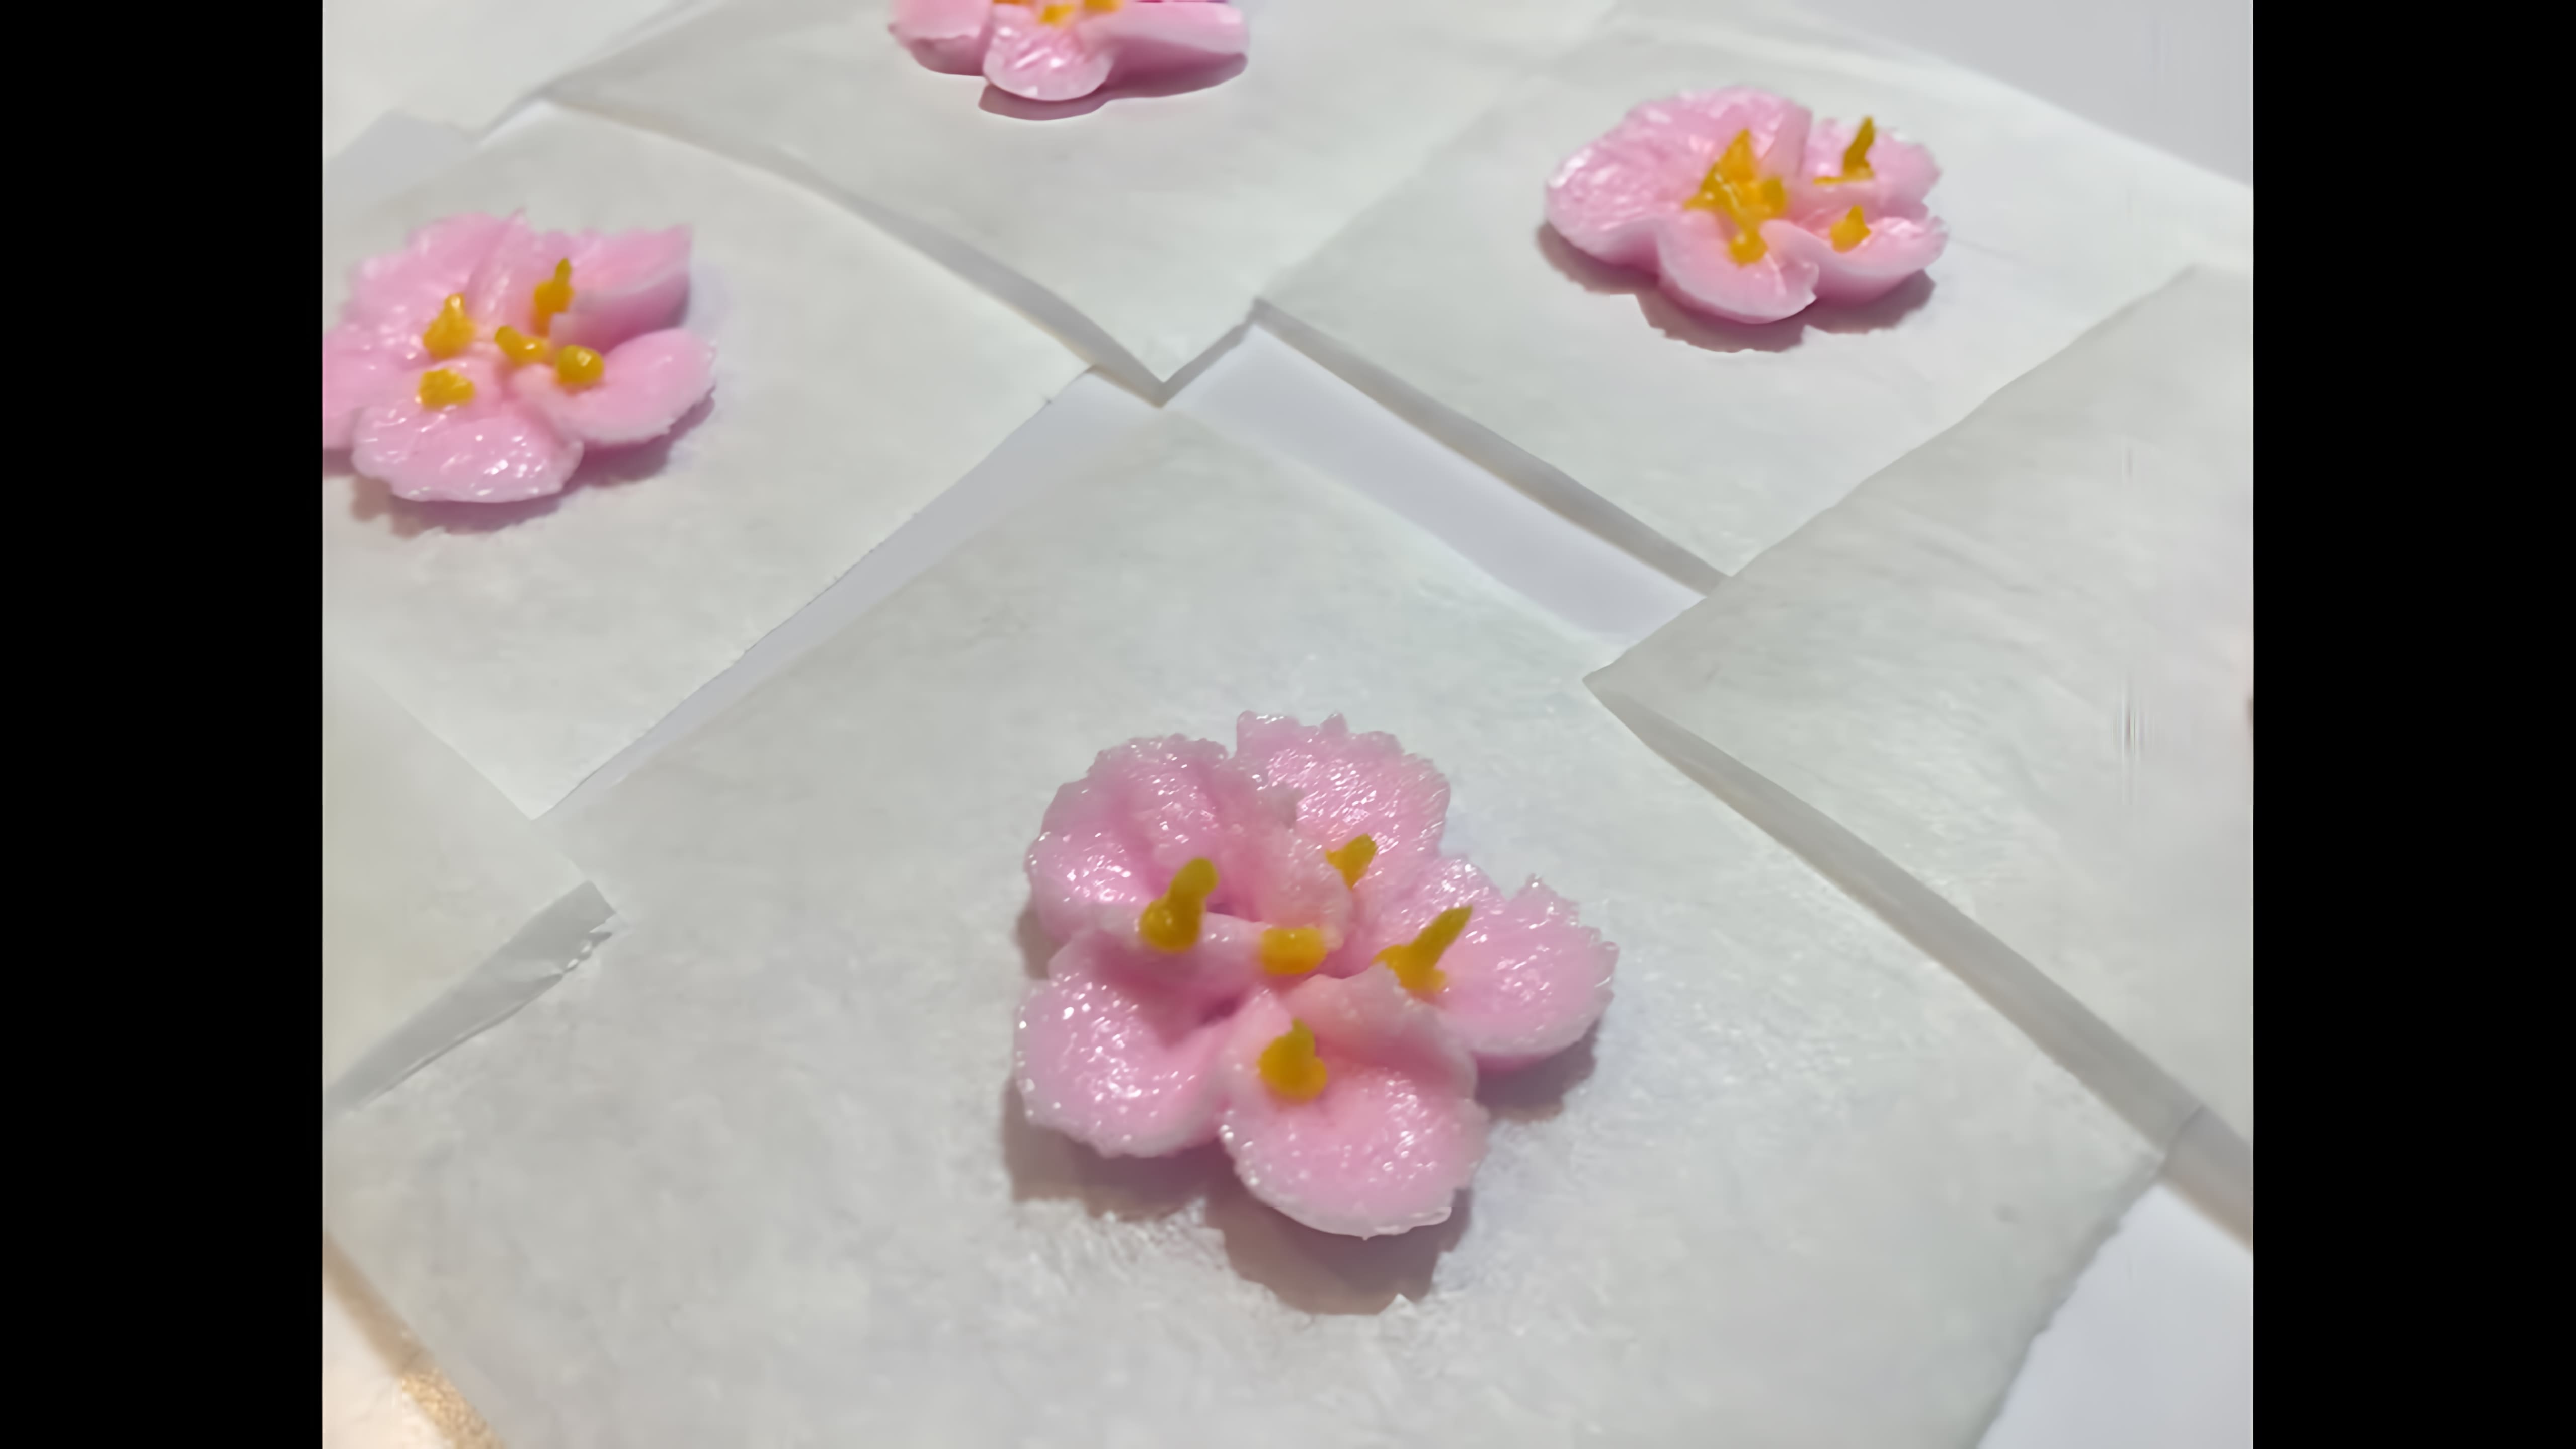 Видео: ЯБЛОНЕВЫЙ ЦВЕТОК. Как сделать цветок яблони из крема. Украшение для куличей, капкейков и тортов.